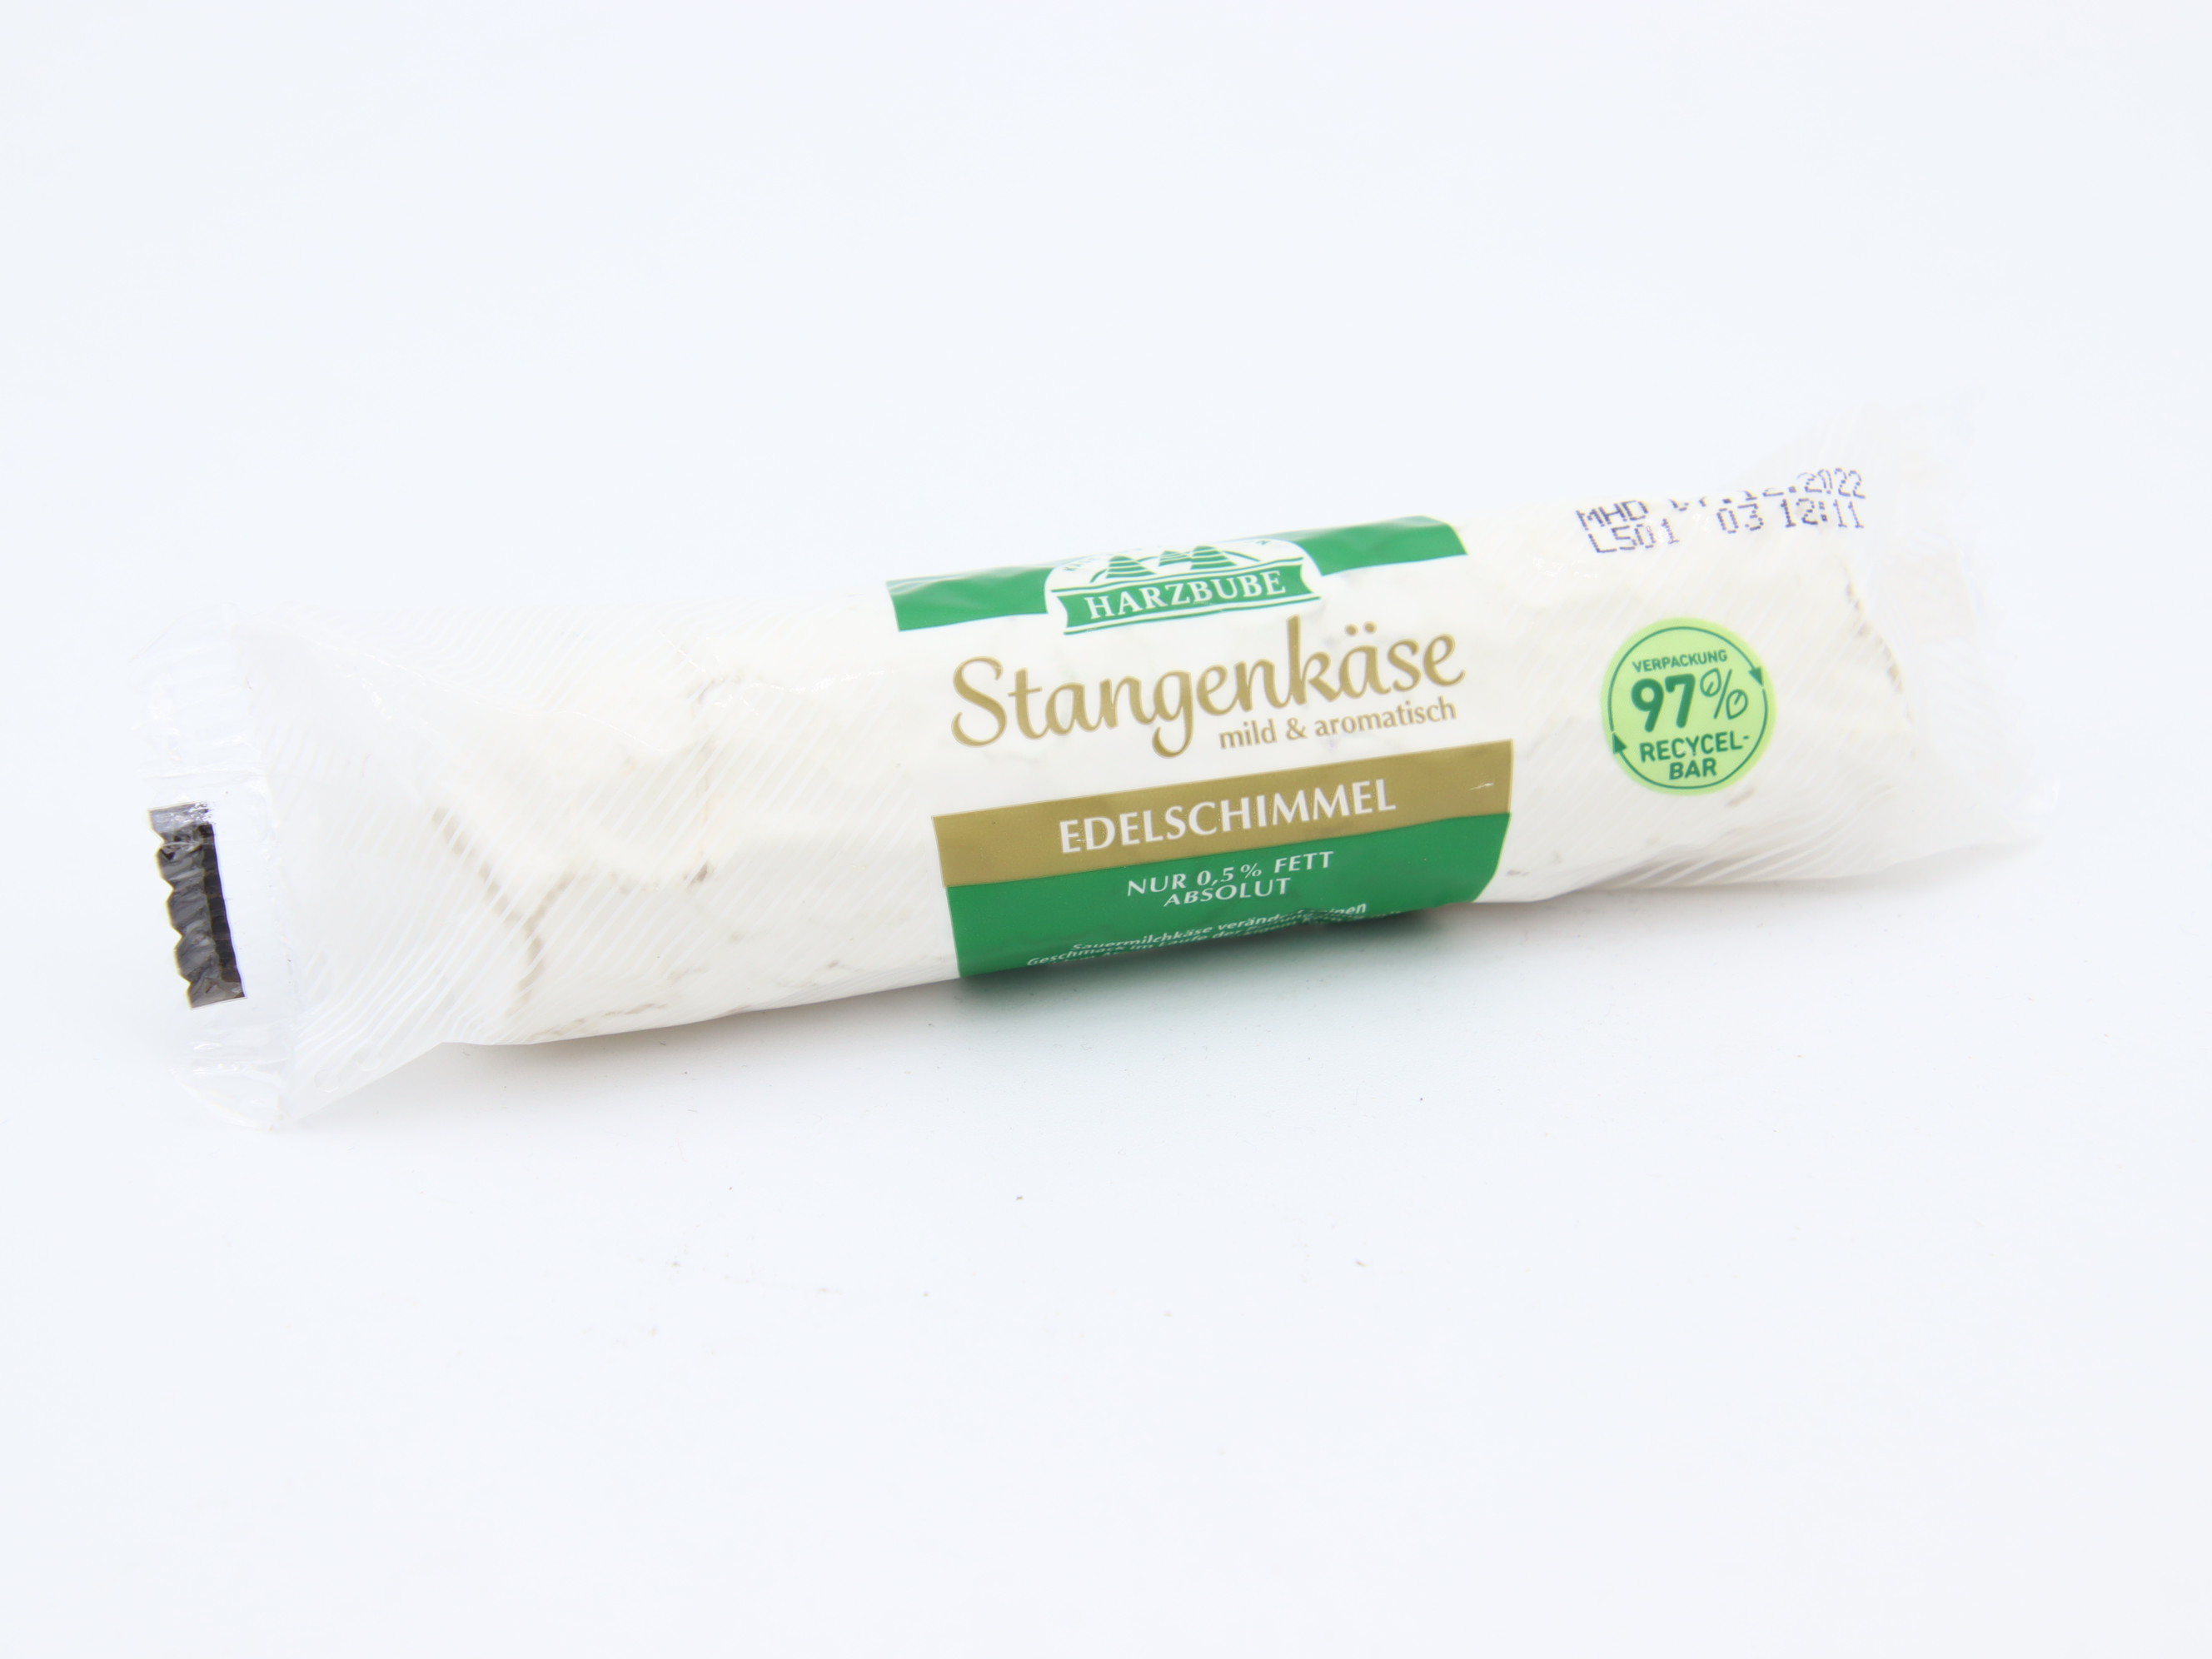 Zrající sýr tyčinka 100g: Harzbube - s bílou plísní